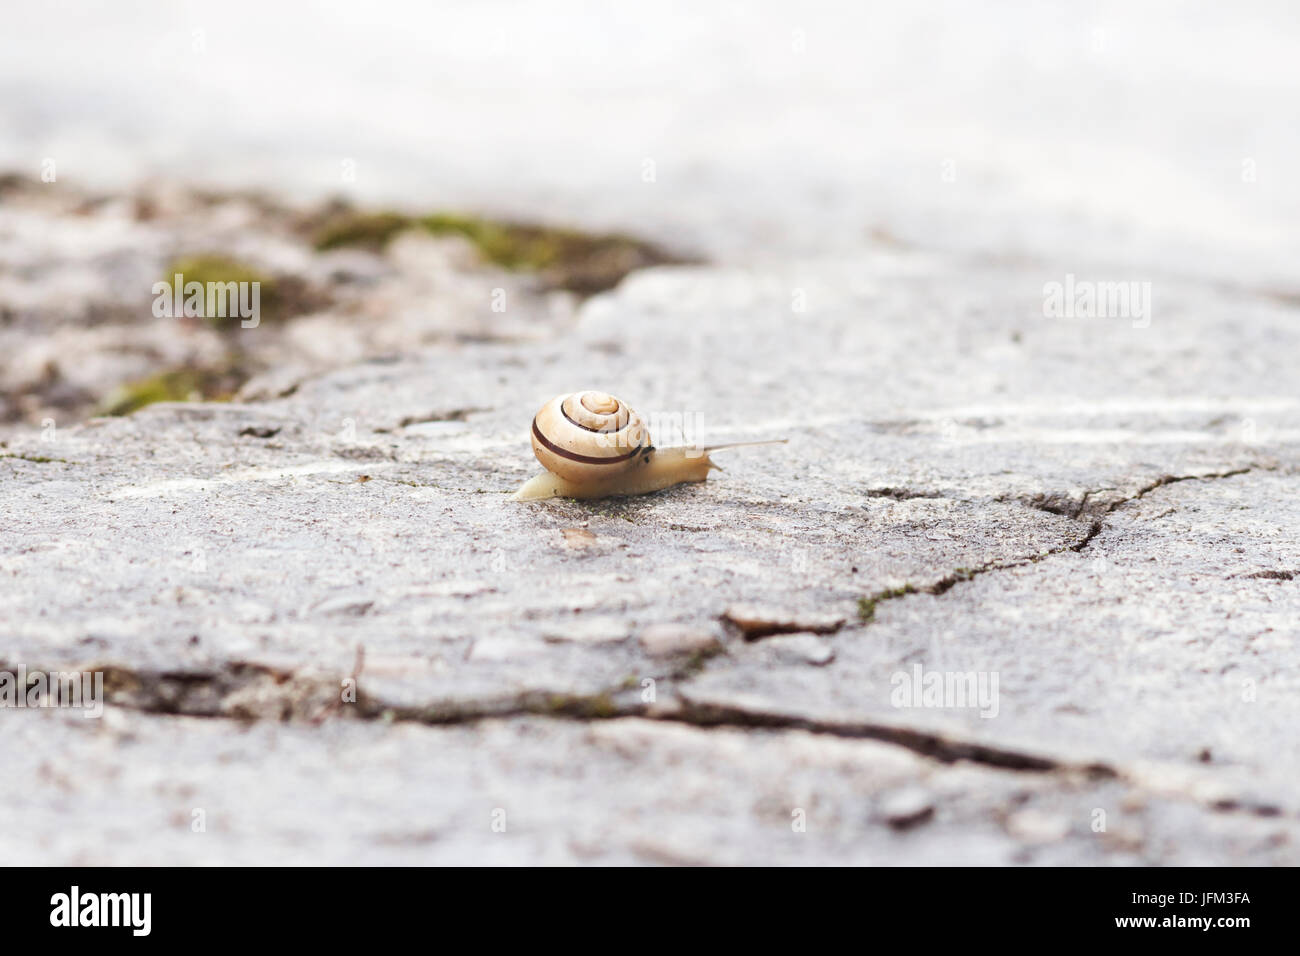 Escargot rampant sur la dure et humide jardin de béton macro photographie Banque D'Images